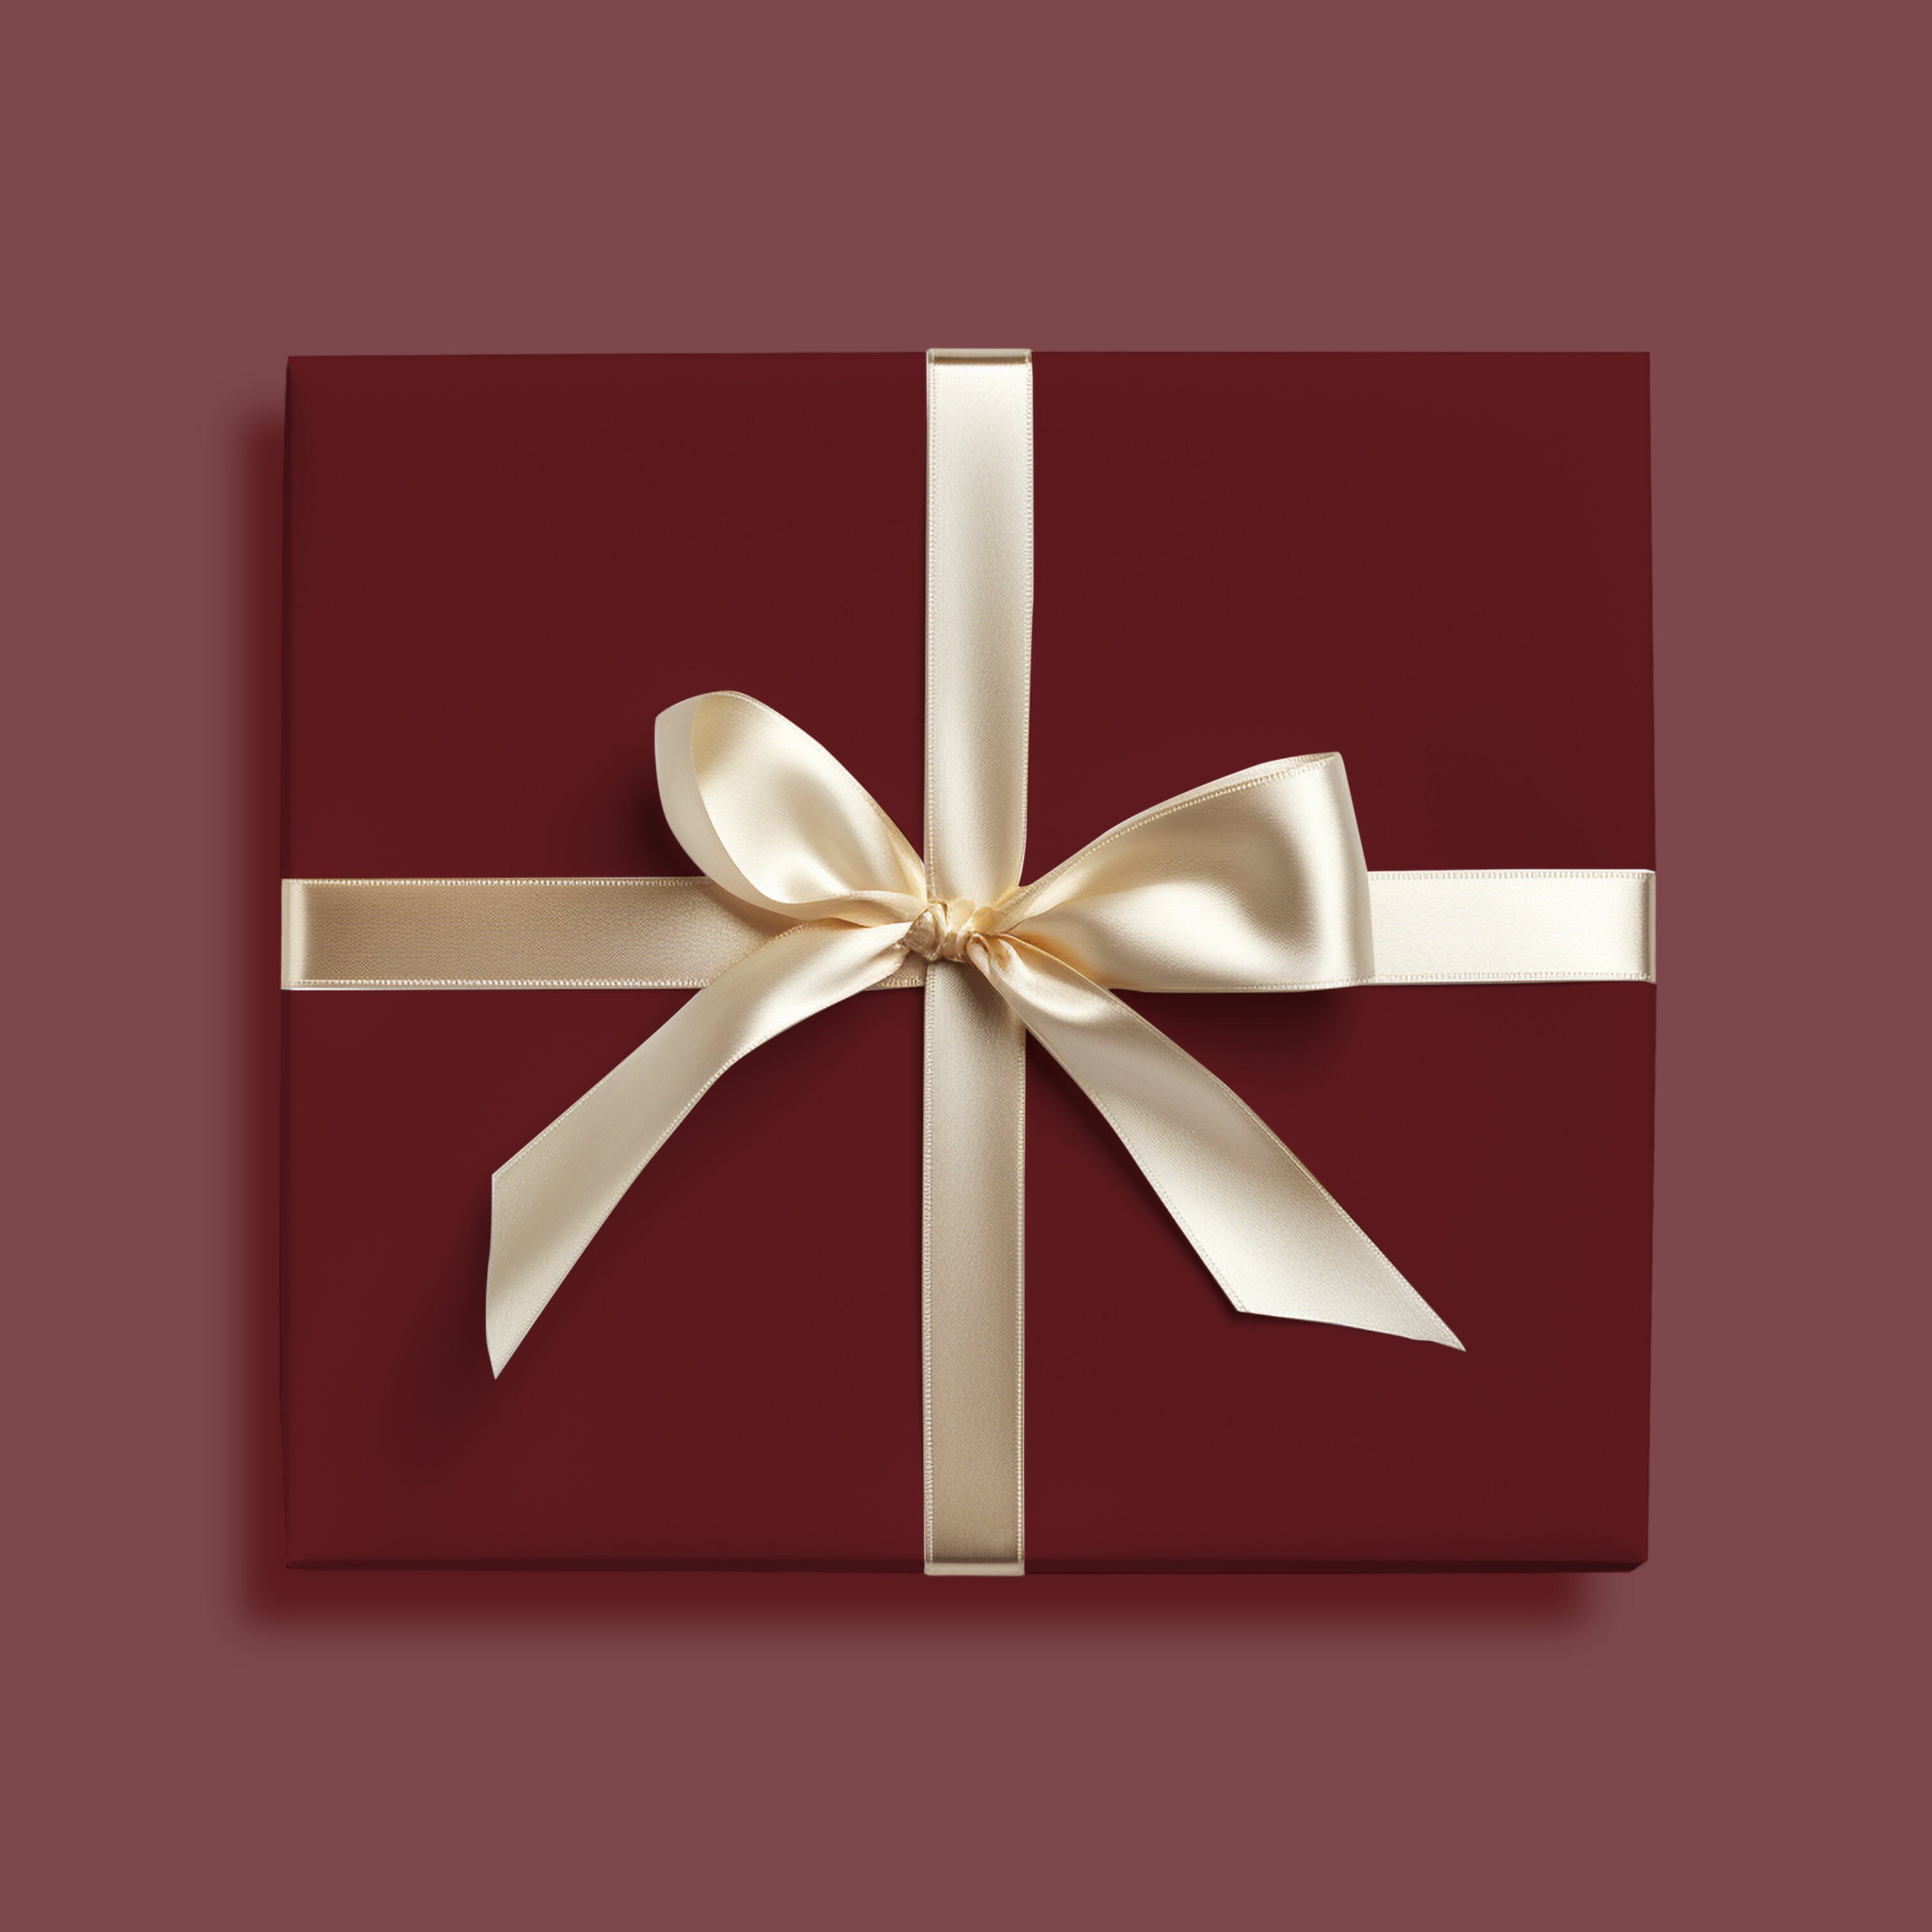 Burgundy Bulk Tissue Paper, Tissue Paper, Gift Grade Tissue Paper Sheets 20  X 30, Maroon Tissue Paper, Gift Wrap,christmas,birthdays 